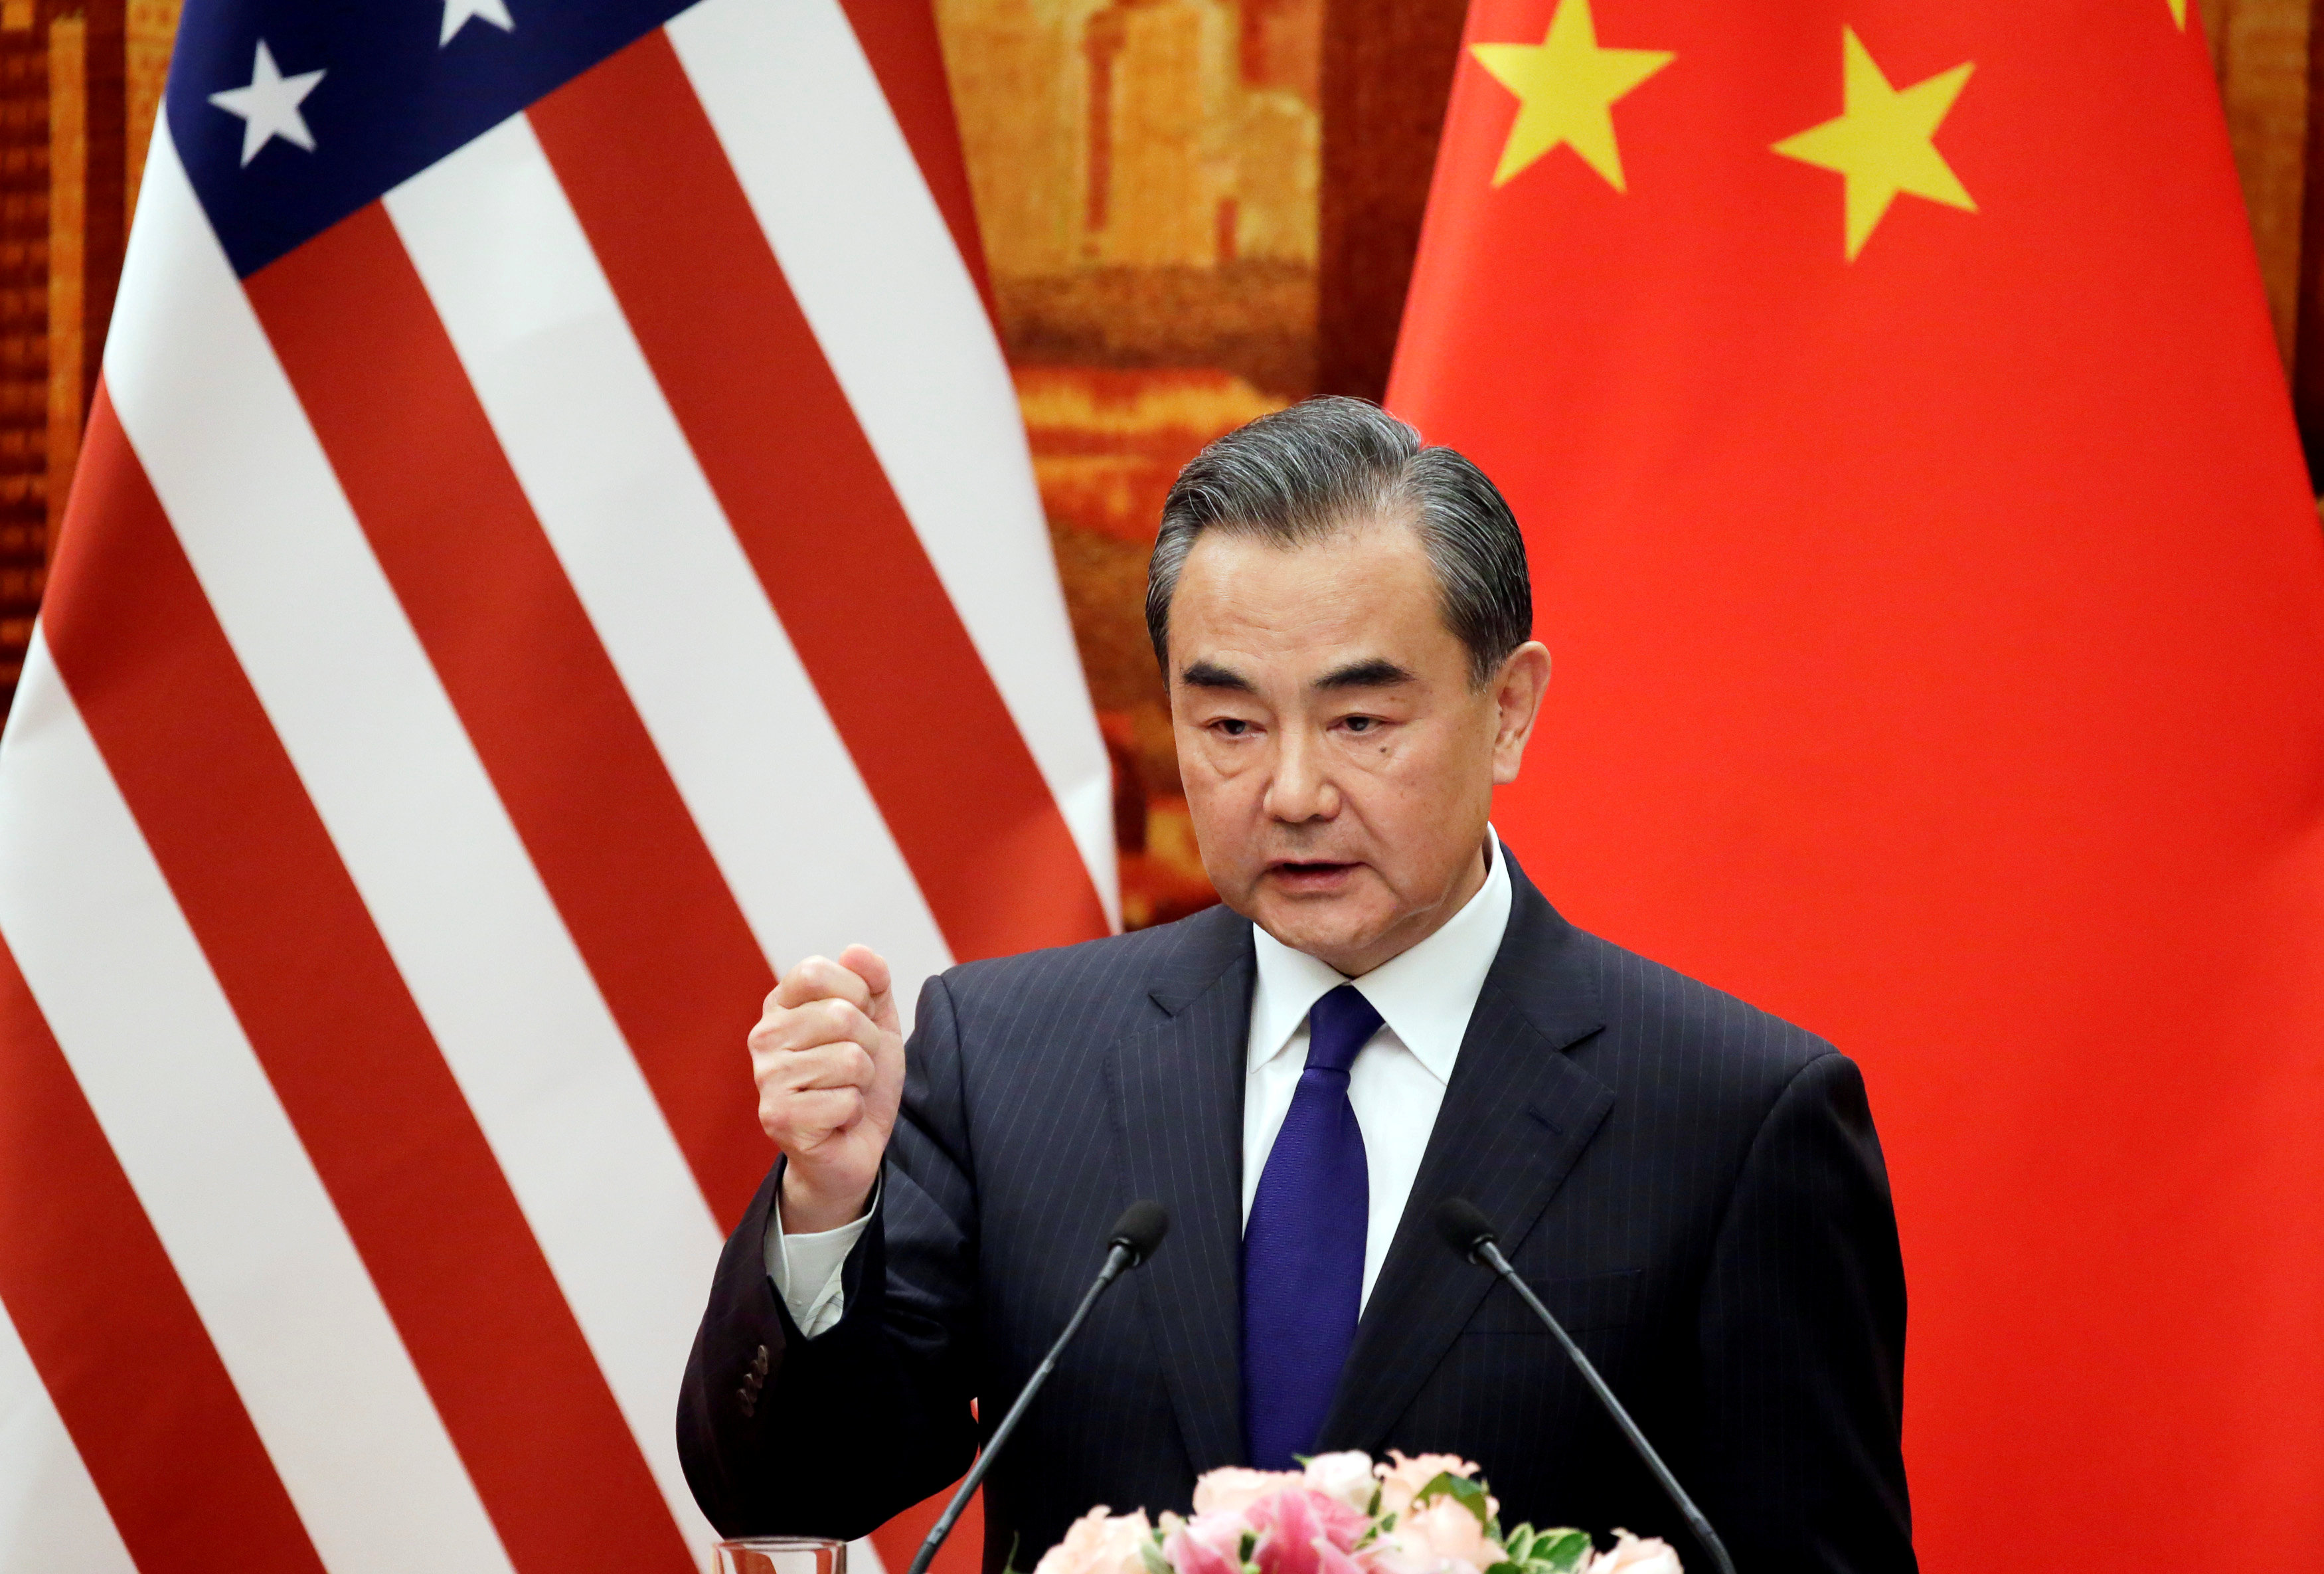 أرشيفية لوزير الخارجية الصيني، وانغ يي، وخلفه يظهر علم الولايات المتحدة. رويترز